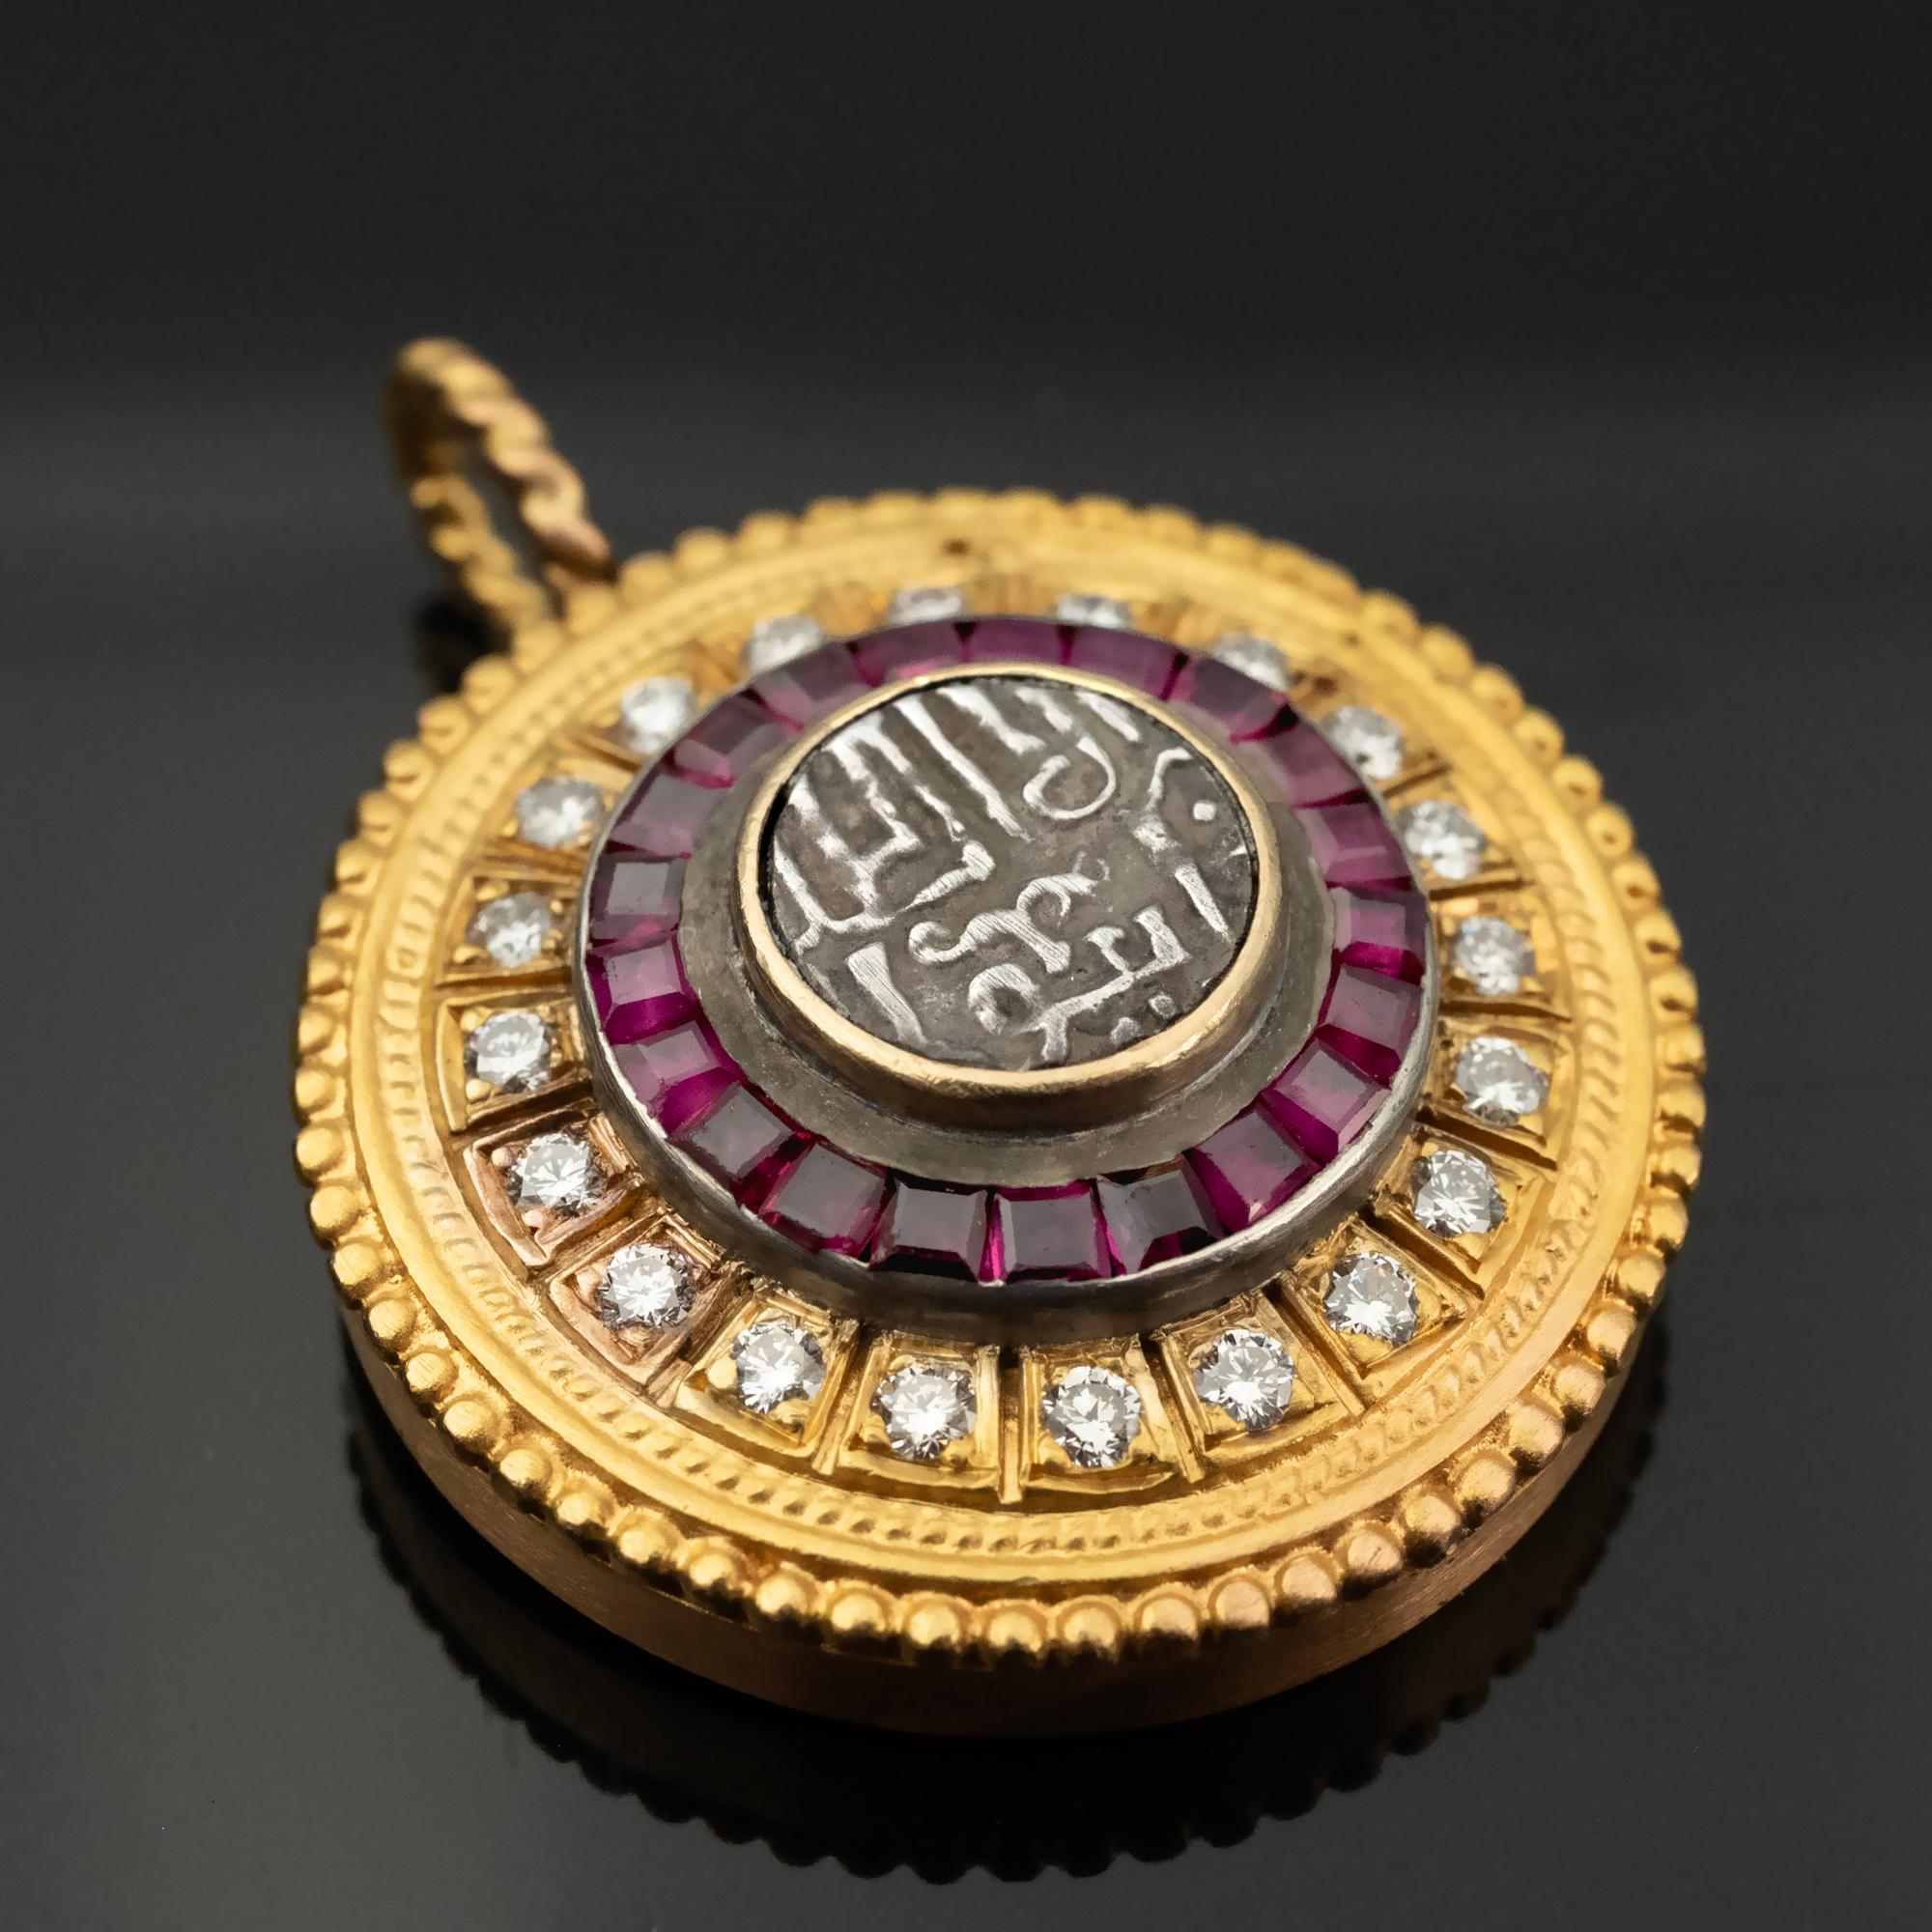 
Dieser handgefertigte Anhänger aus luxuriösem 22-karätigem Gold mit einem Gewicht von 14,1 Gramm ist ein Zeugnis byzantinischer Eleganz. Das Herzstück ist eine antike Münze mit zarten arabischen Schriftzeichen, die vor einem Hintergrund aus